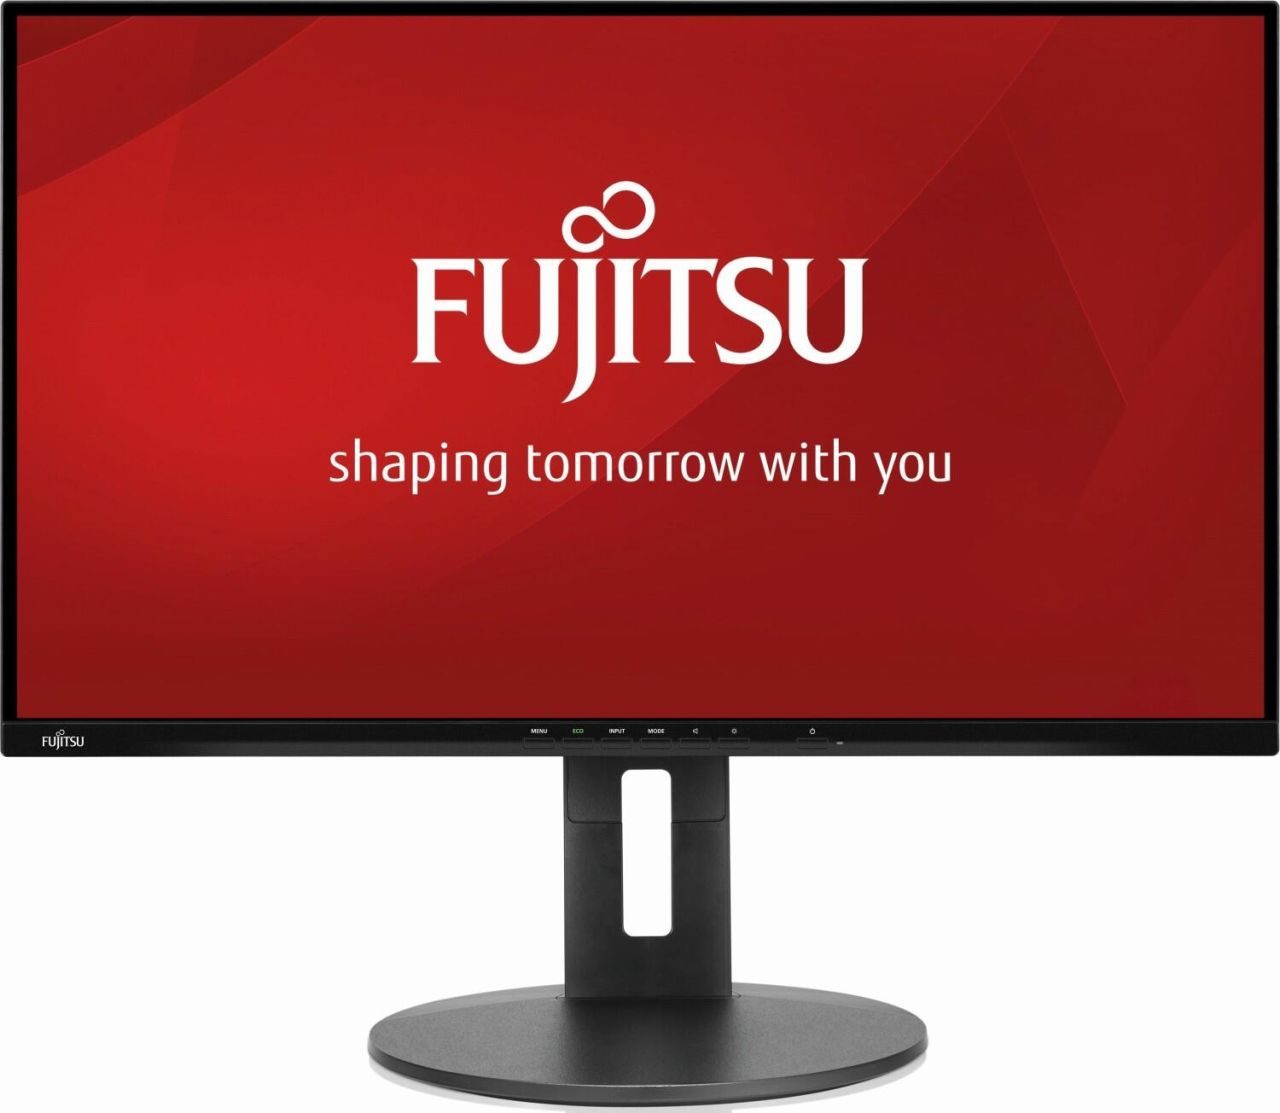 Fujitsu B-Line P27-9 TS LED-Monitor 68,6 cm (27 Zoll)